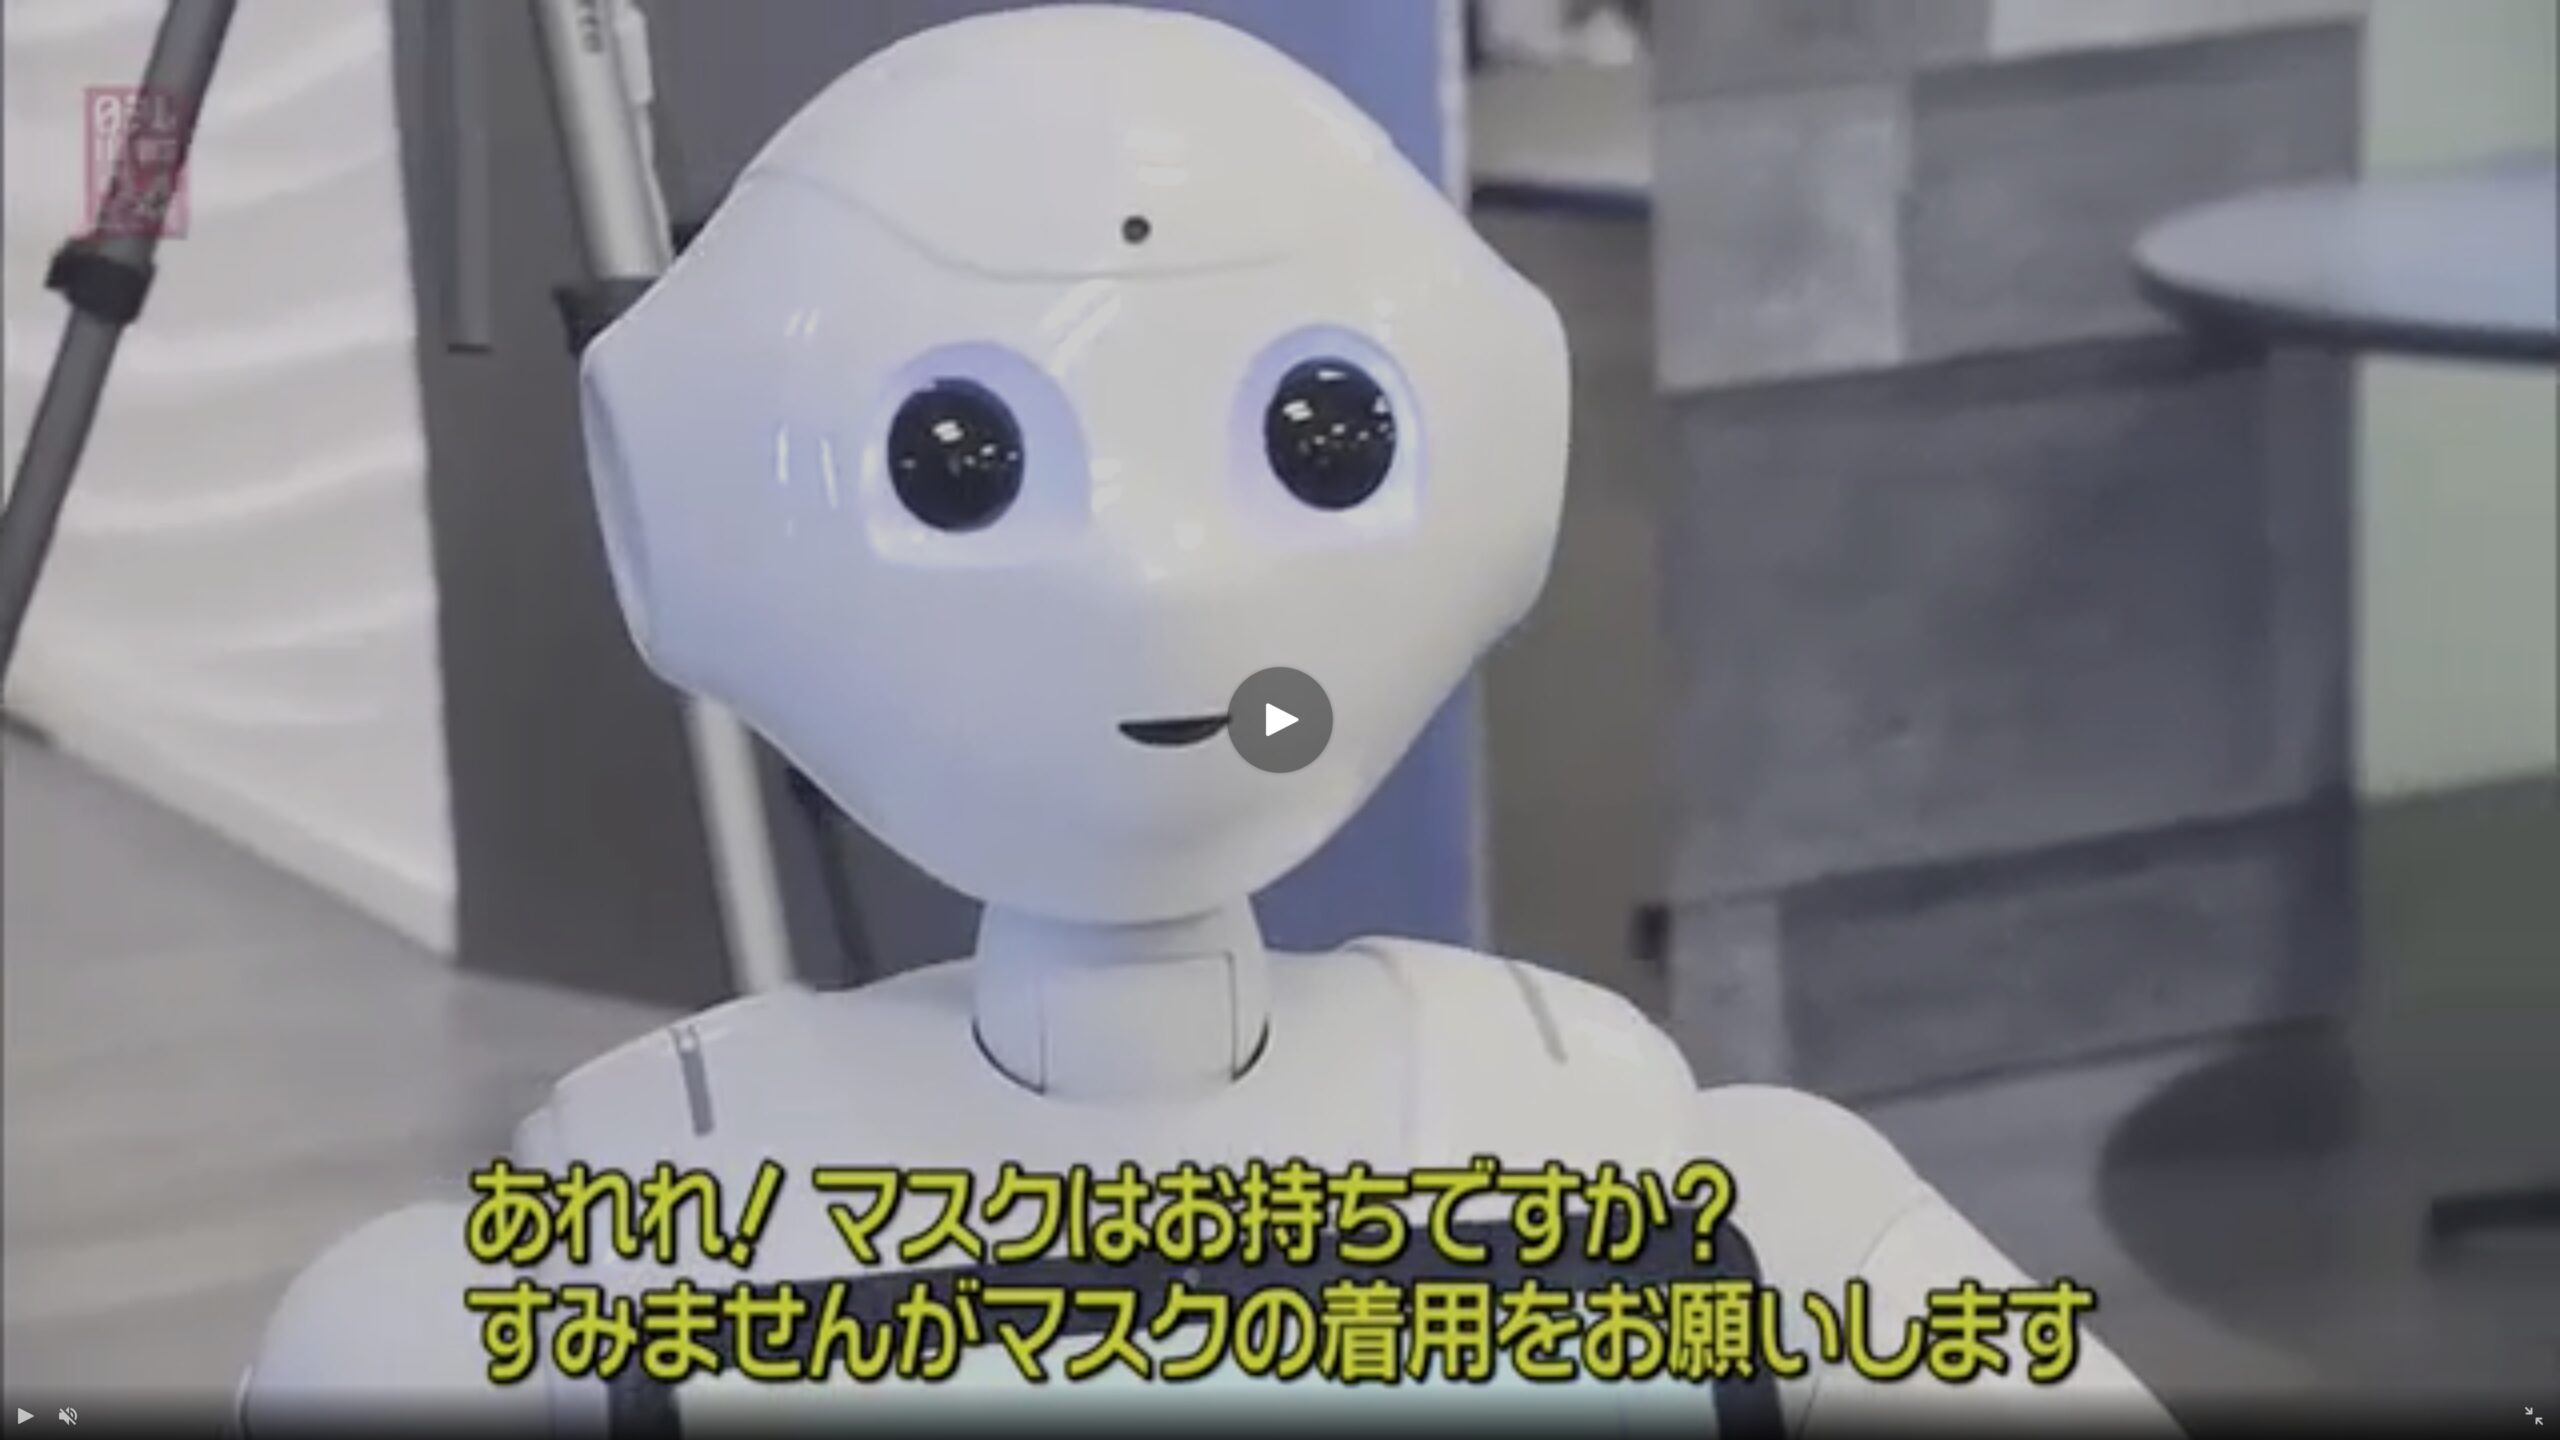 ロボットに命令され監視される社会の到来か？